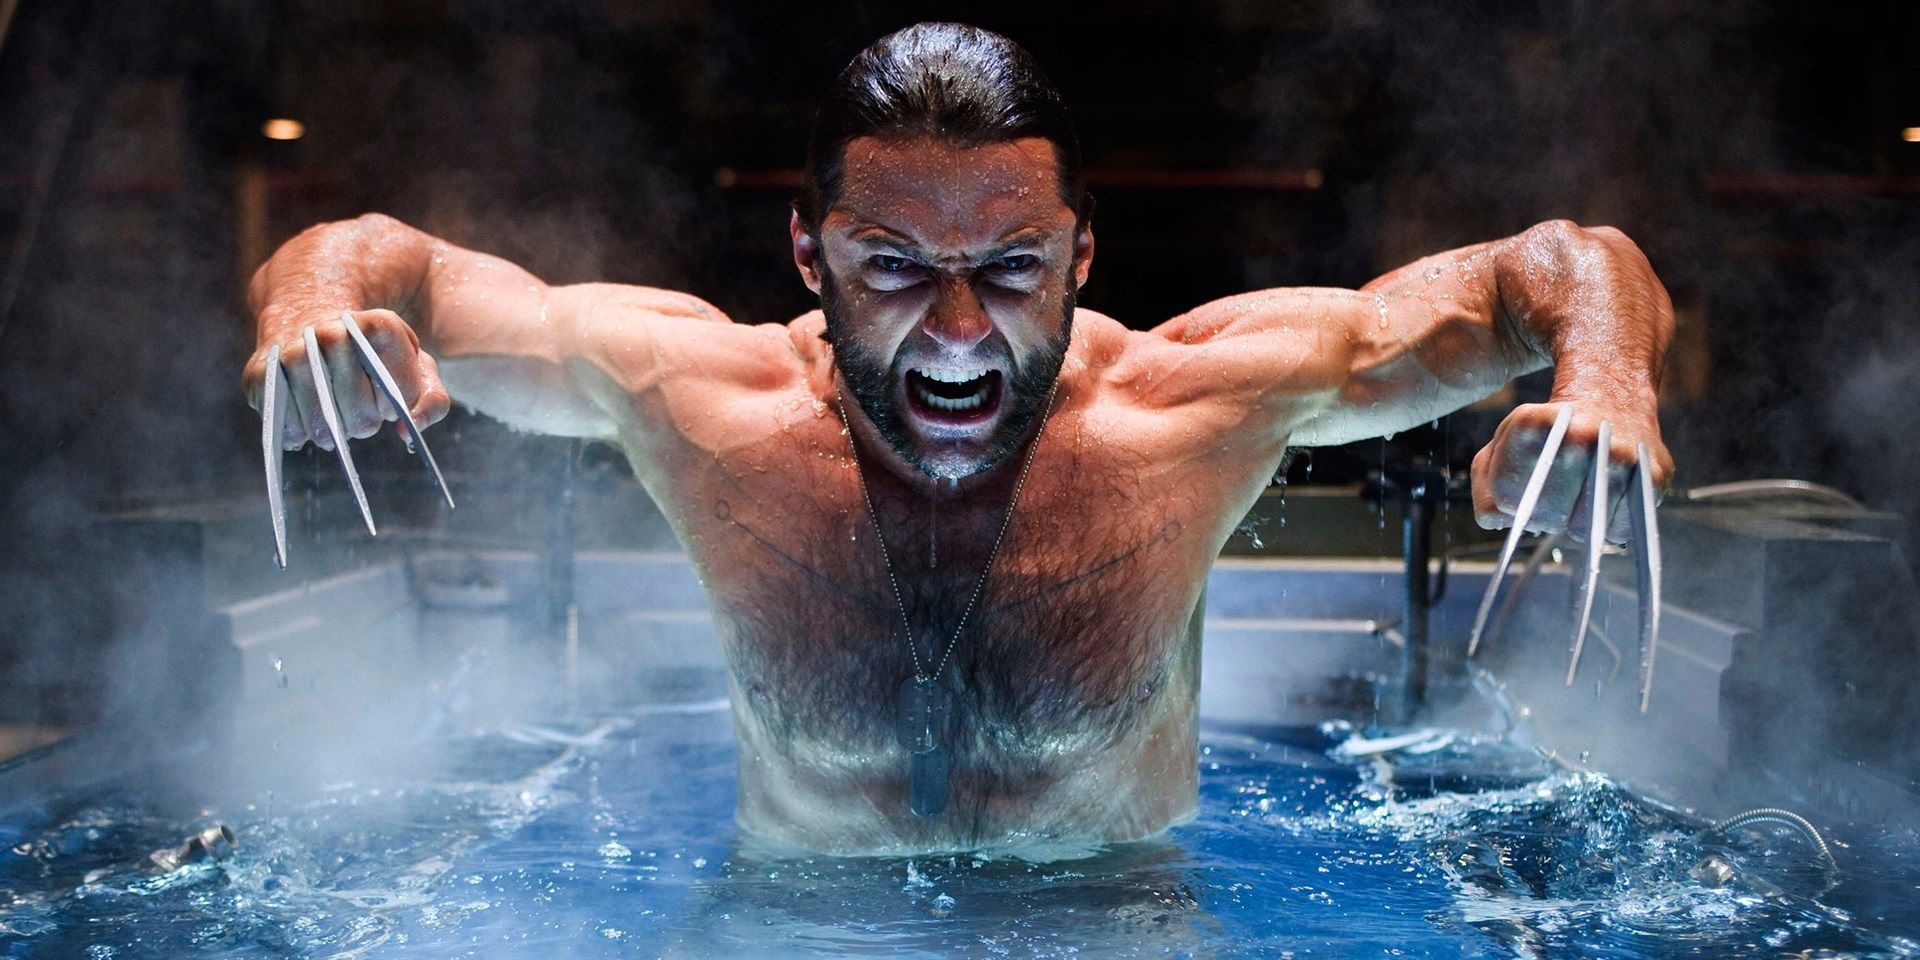 Wolverine emerging from a bath in X-Men Origins Wolverine.